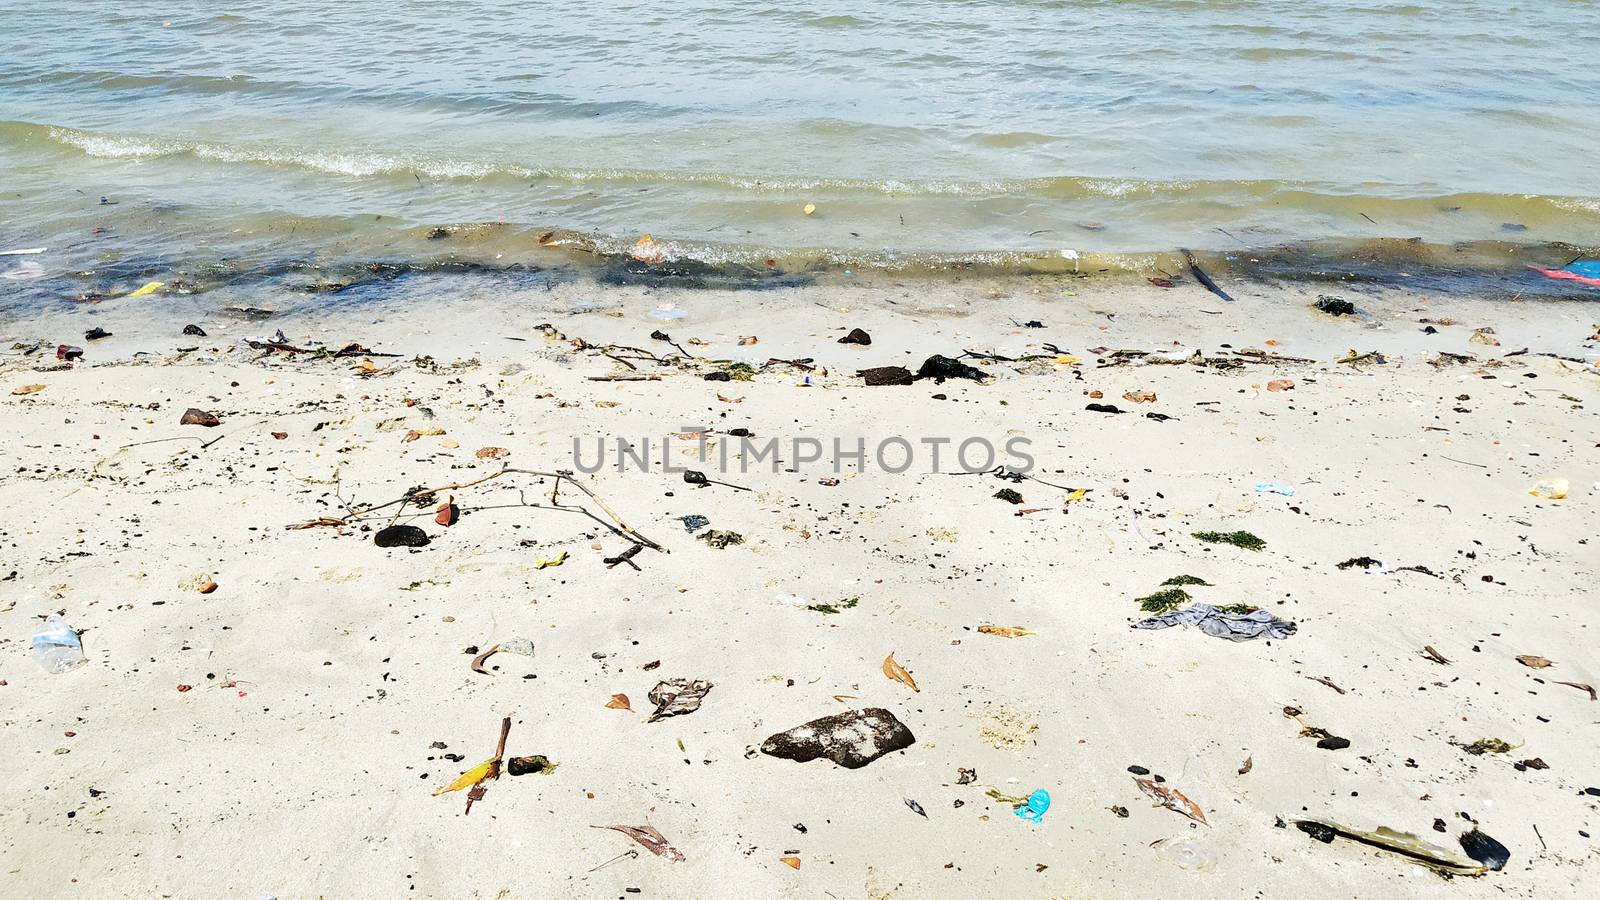 Pollution on the beach by szefei